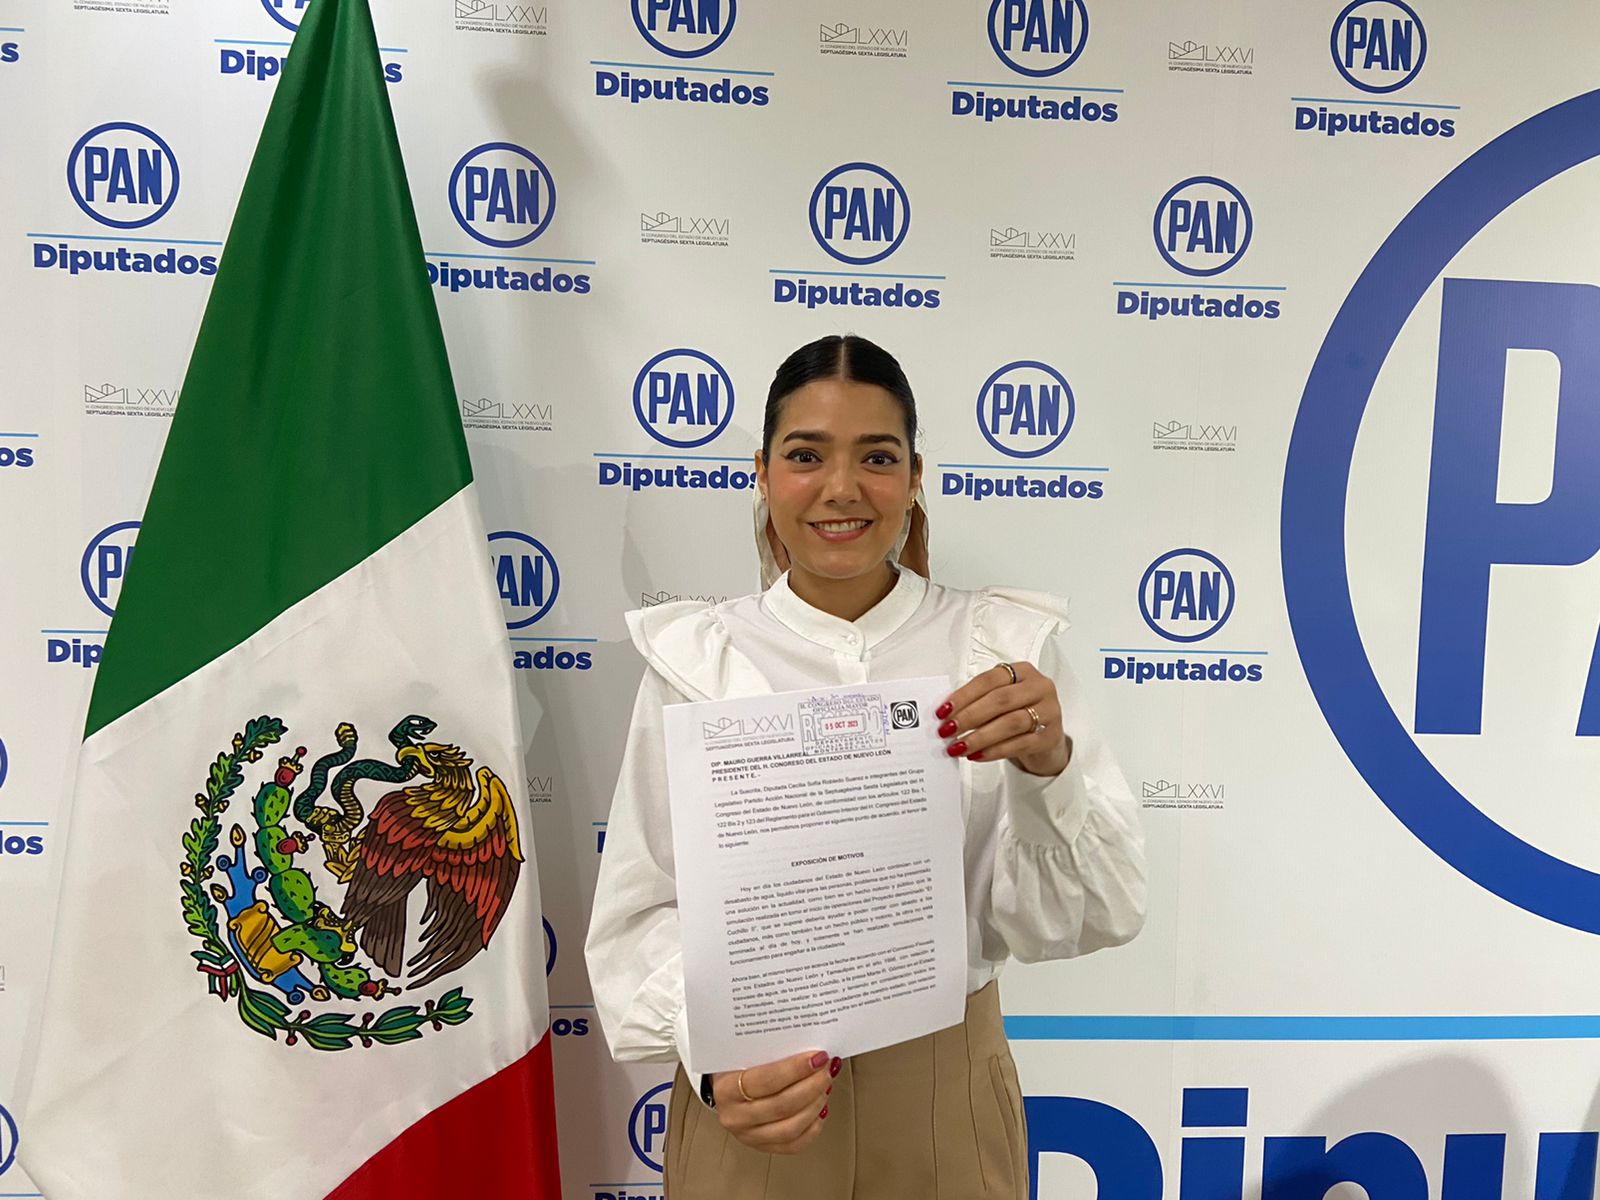 Exhorta Diputada Cecilia Robledo a Estado a no realizar trasvase de agua del cuchillo a Tamaulipas, al poner en riesgo abasto de agua para ciudadanos de Nuevo León ante bajo nivel de presas